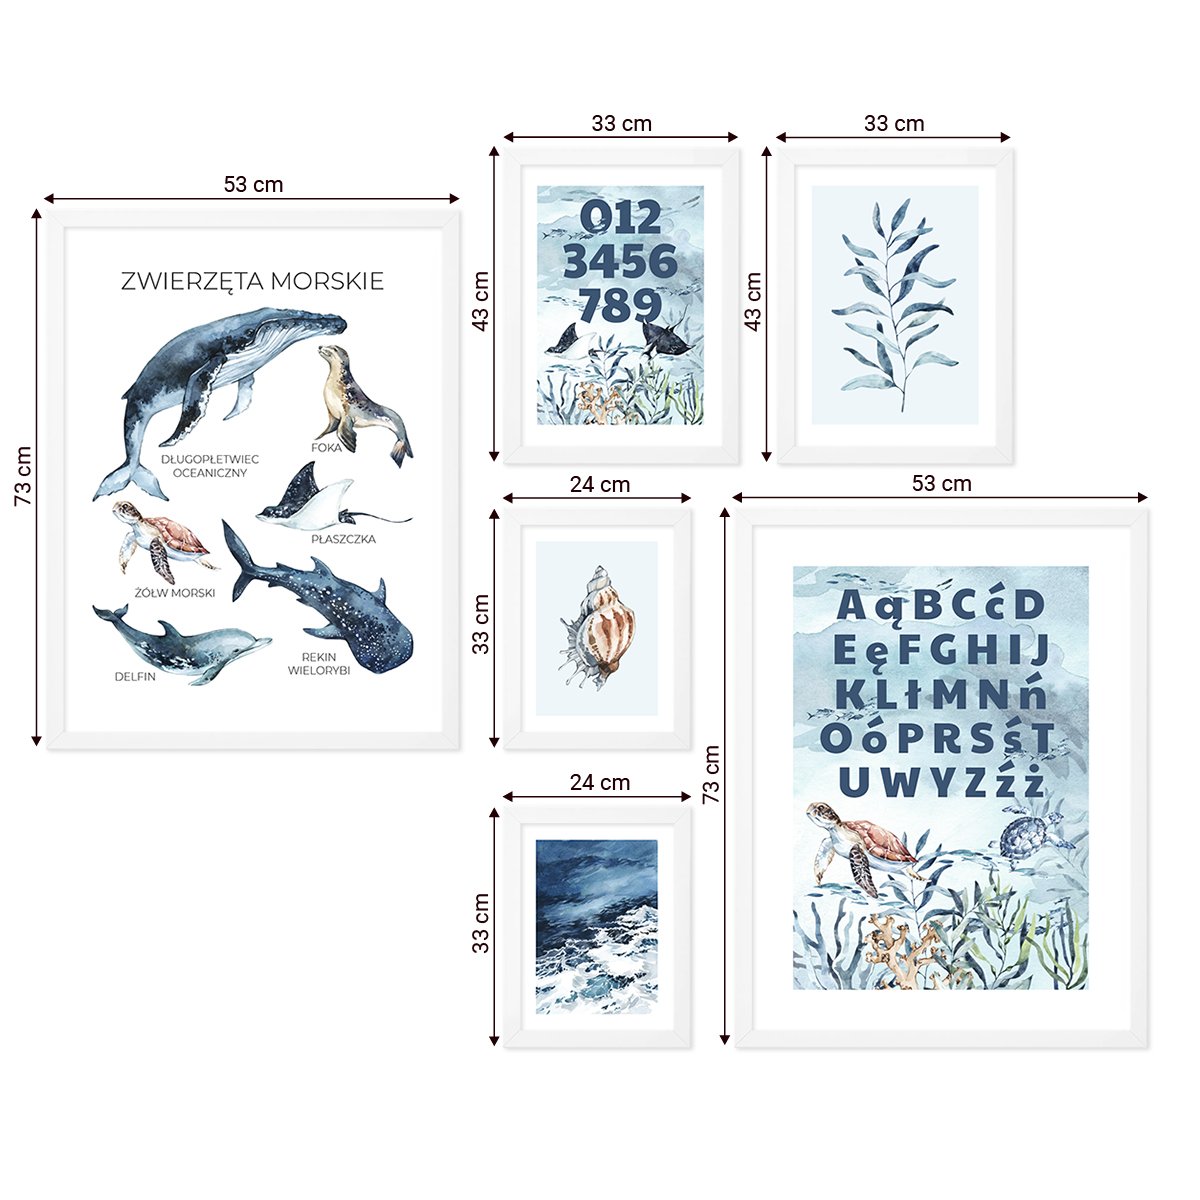 Galeria ścienna dla pierwszoklasisty - zestaw plakatów edukacyjnych z alfabetem, cyframi i zwierzętami morskimi w odcieniach błękitu w białych ramkach dla dzieci#ramka_biala